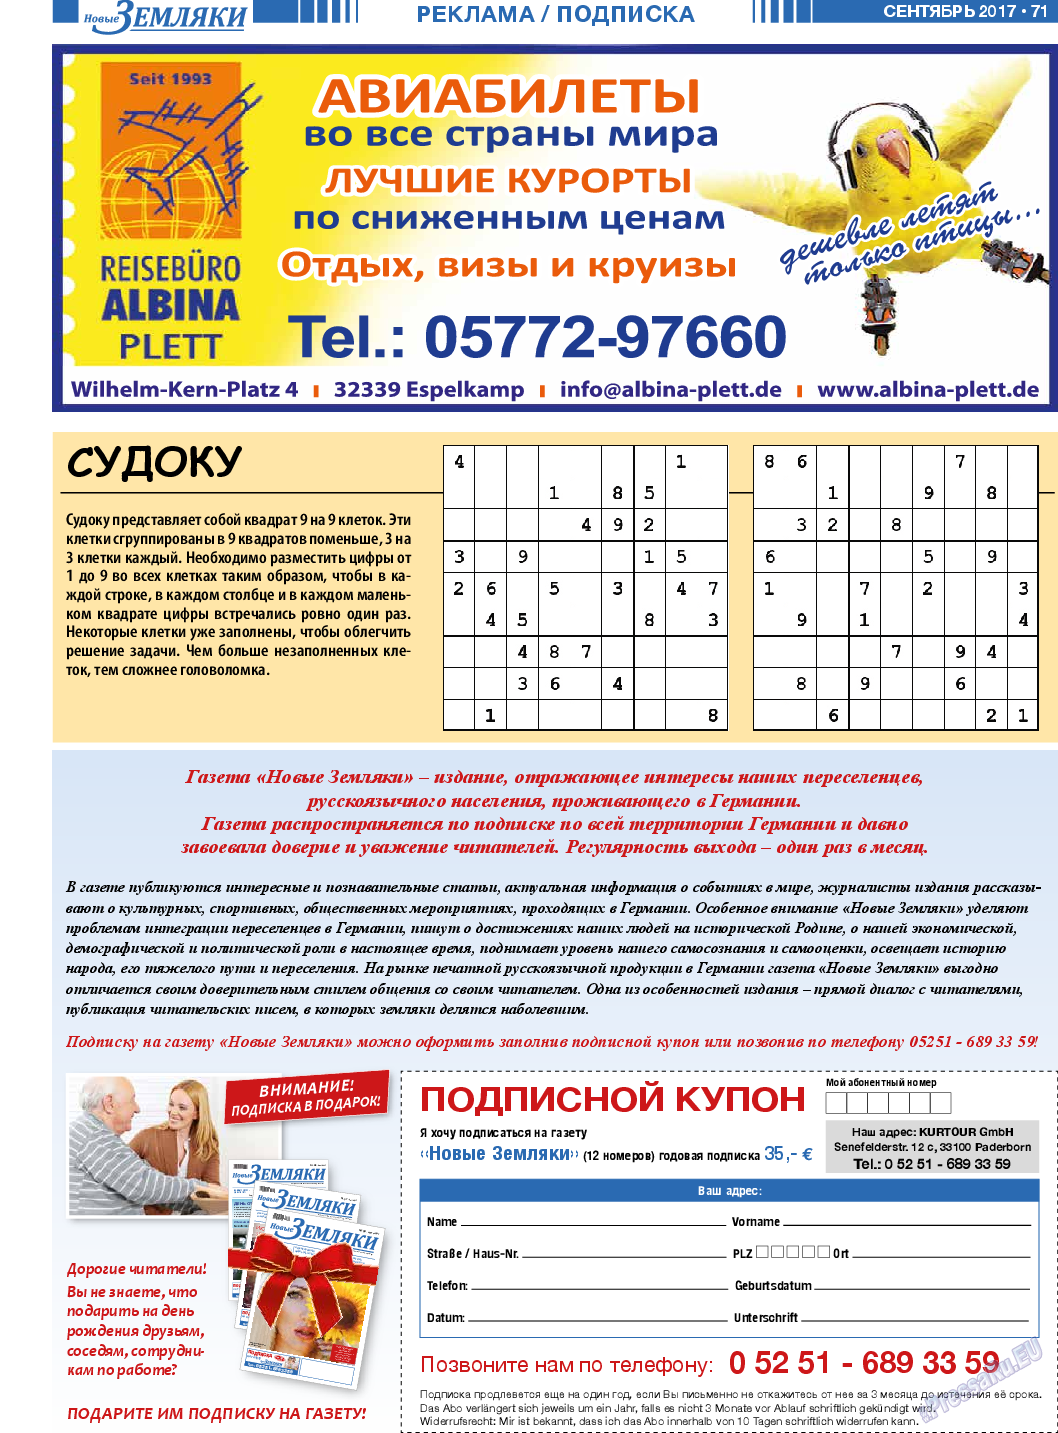 Новые Земляки (газета). 2017 год, номер 9, стр. 71